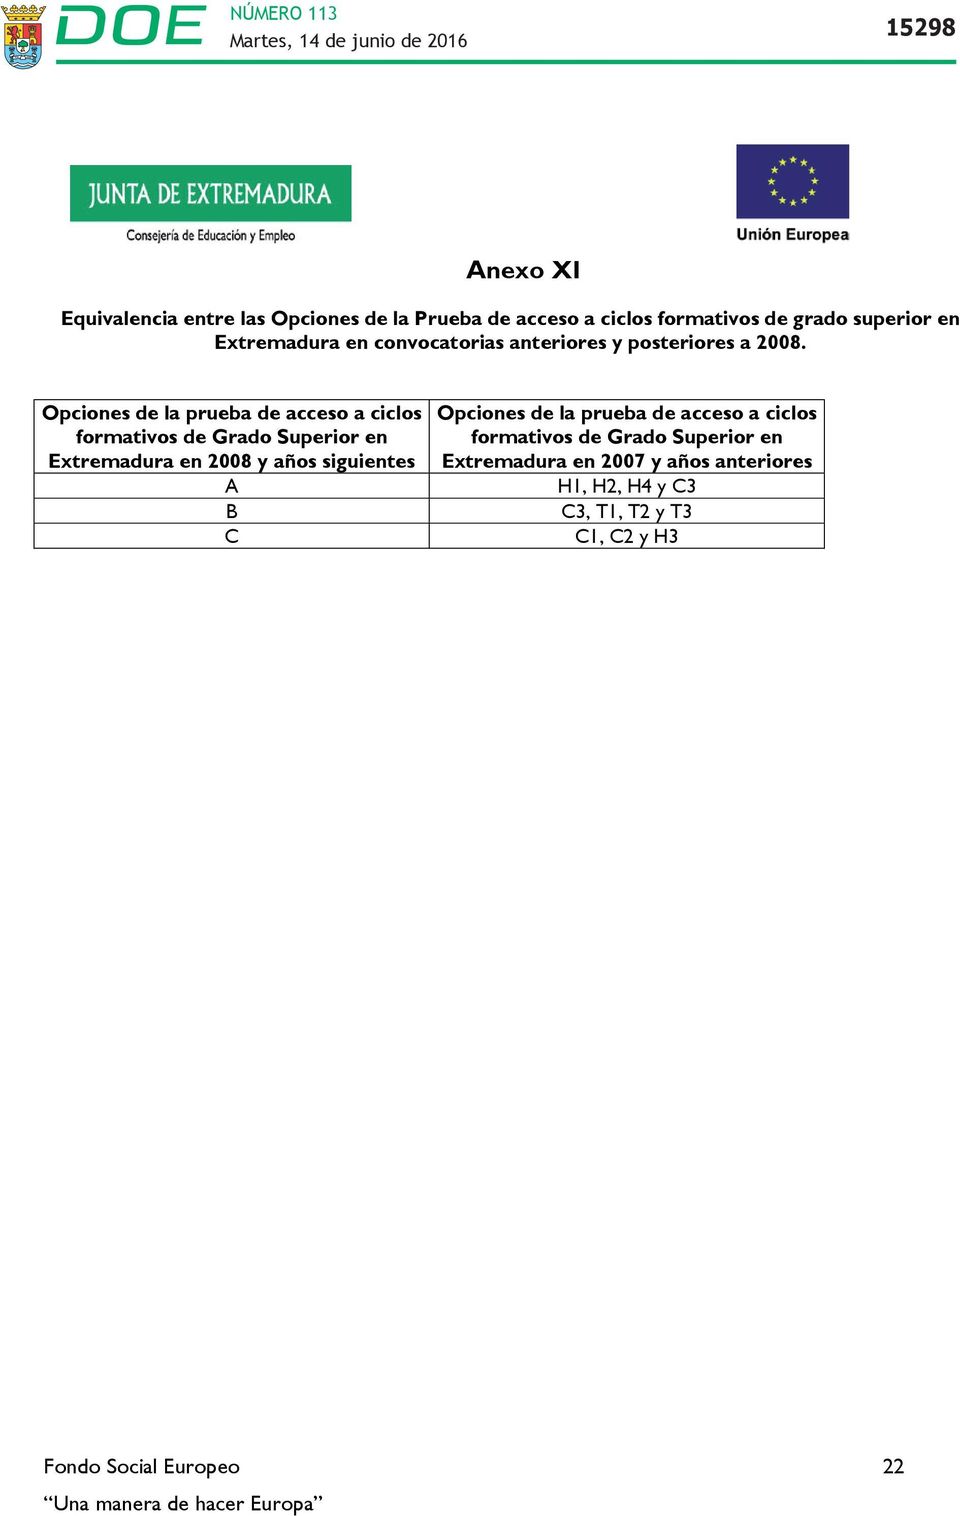 Opciones de la prueba de acceso a ciclos formativos de Grado Superior en Extremadura en 2008 y años siguientes